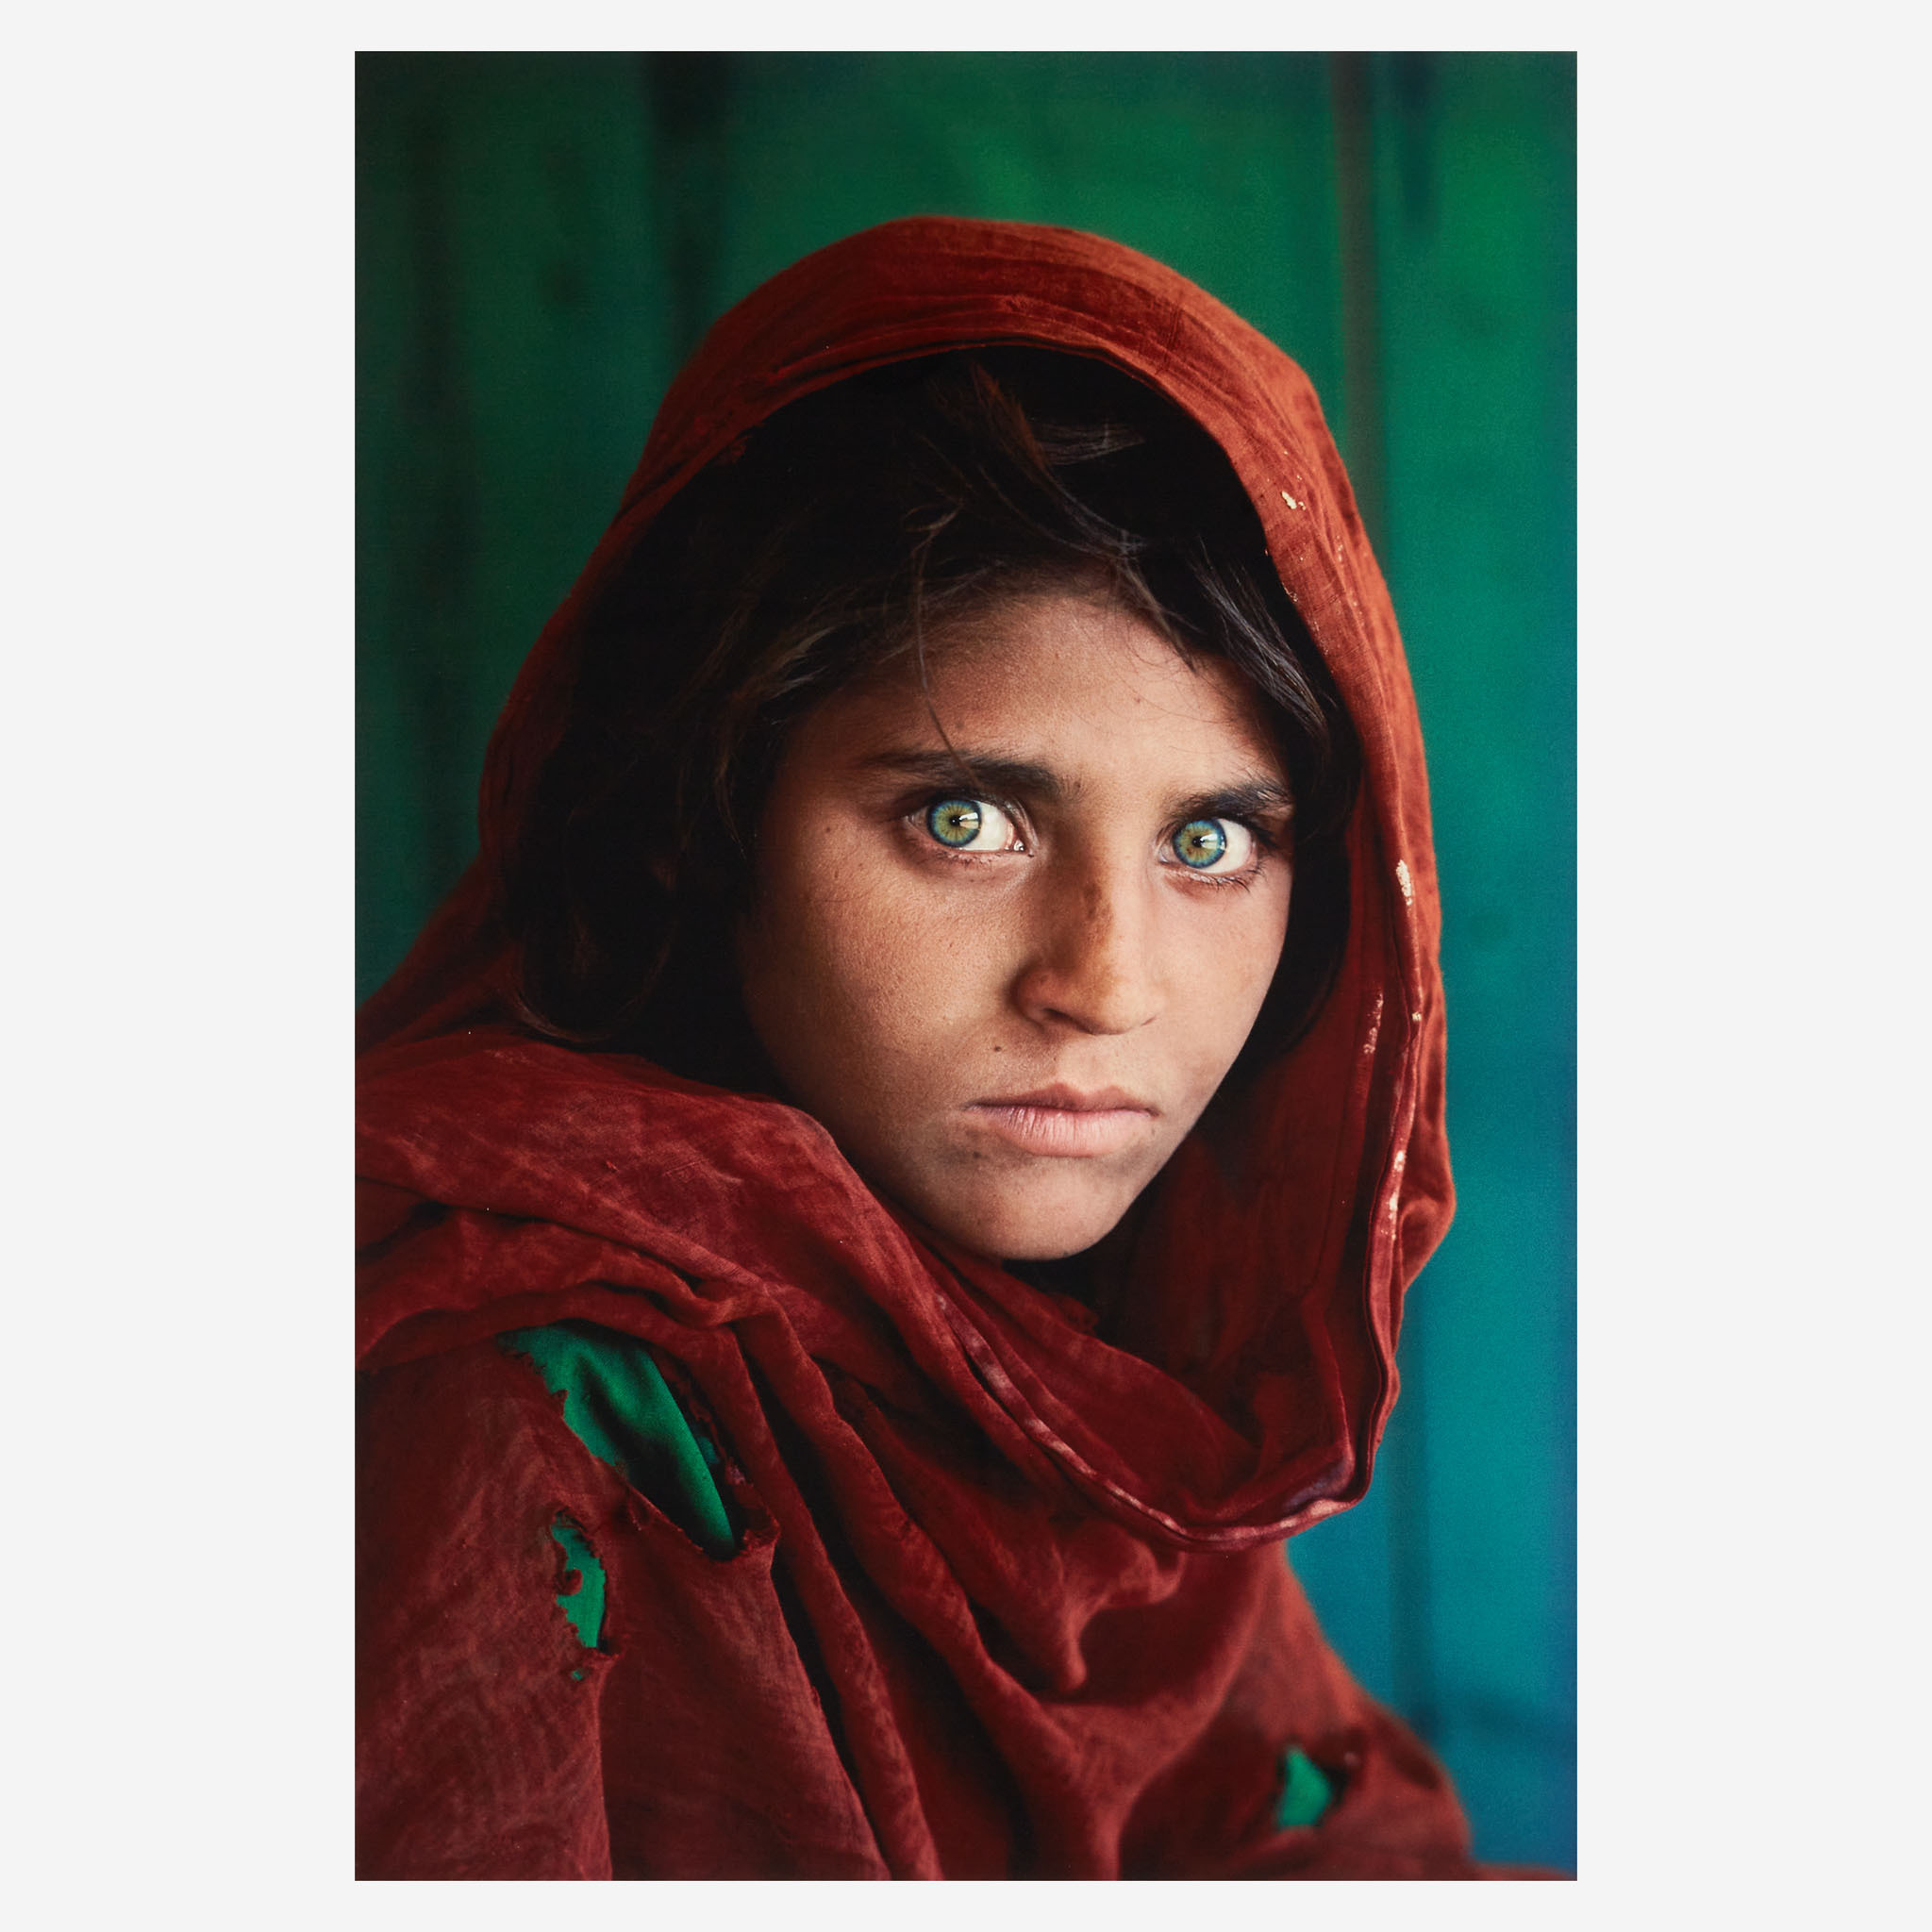 Steve McCurry, Afghan Girl